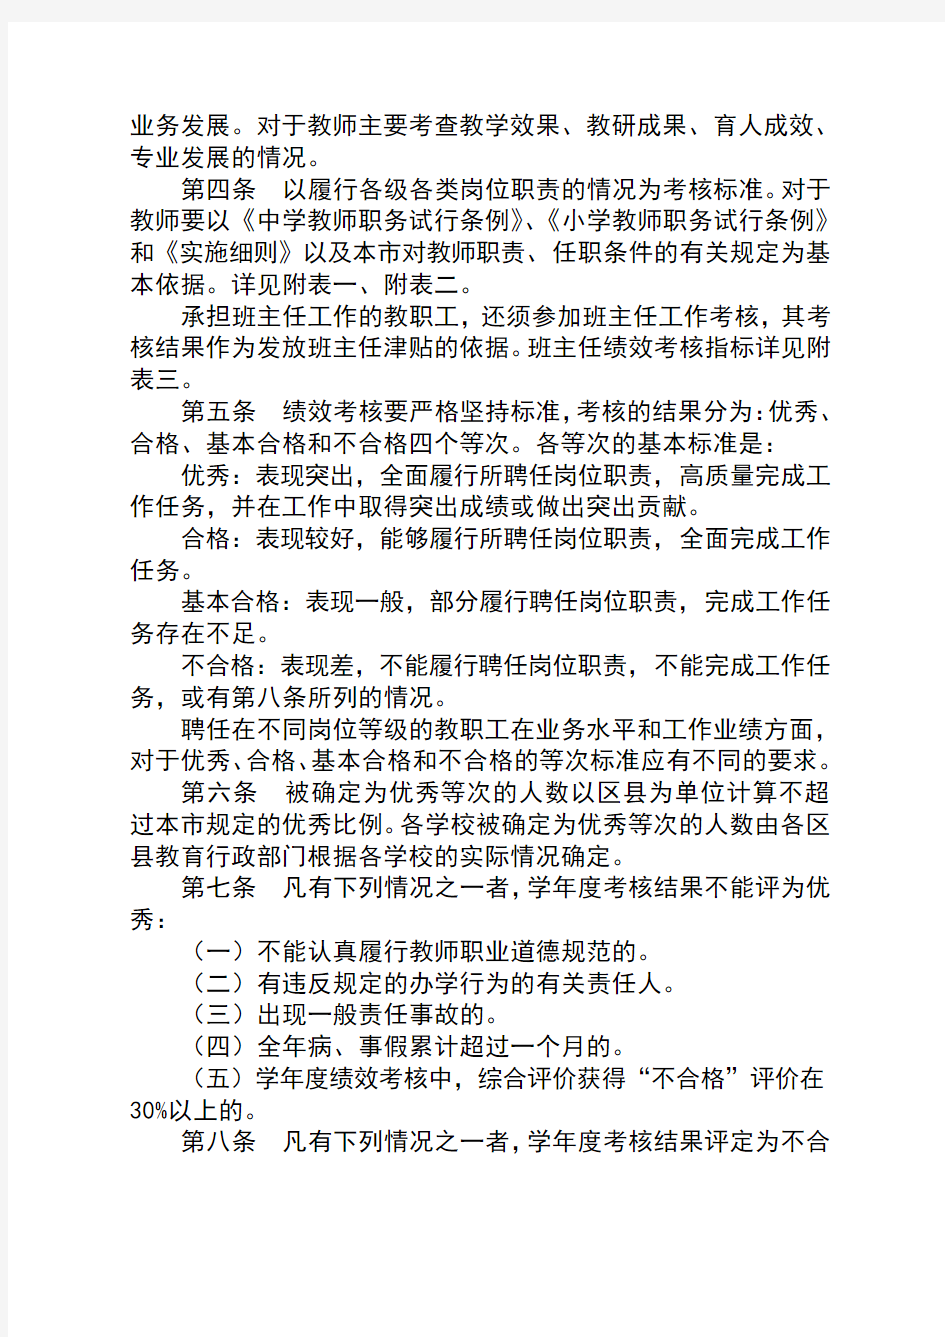 北京市中小学教师考核试行办法